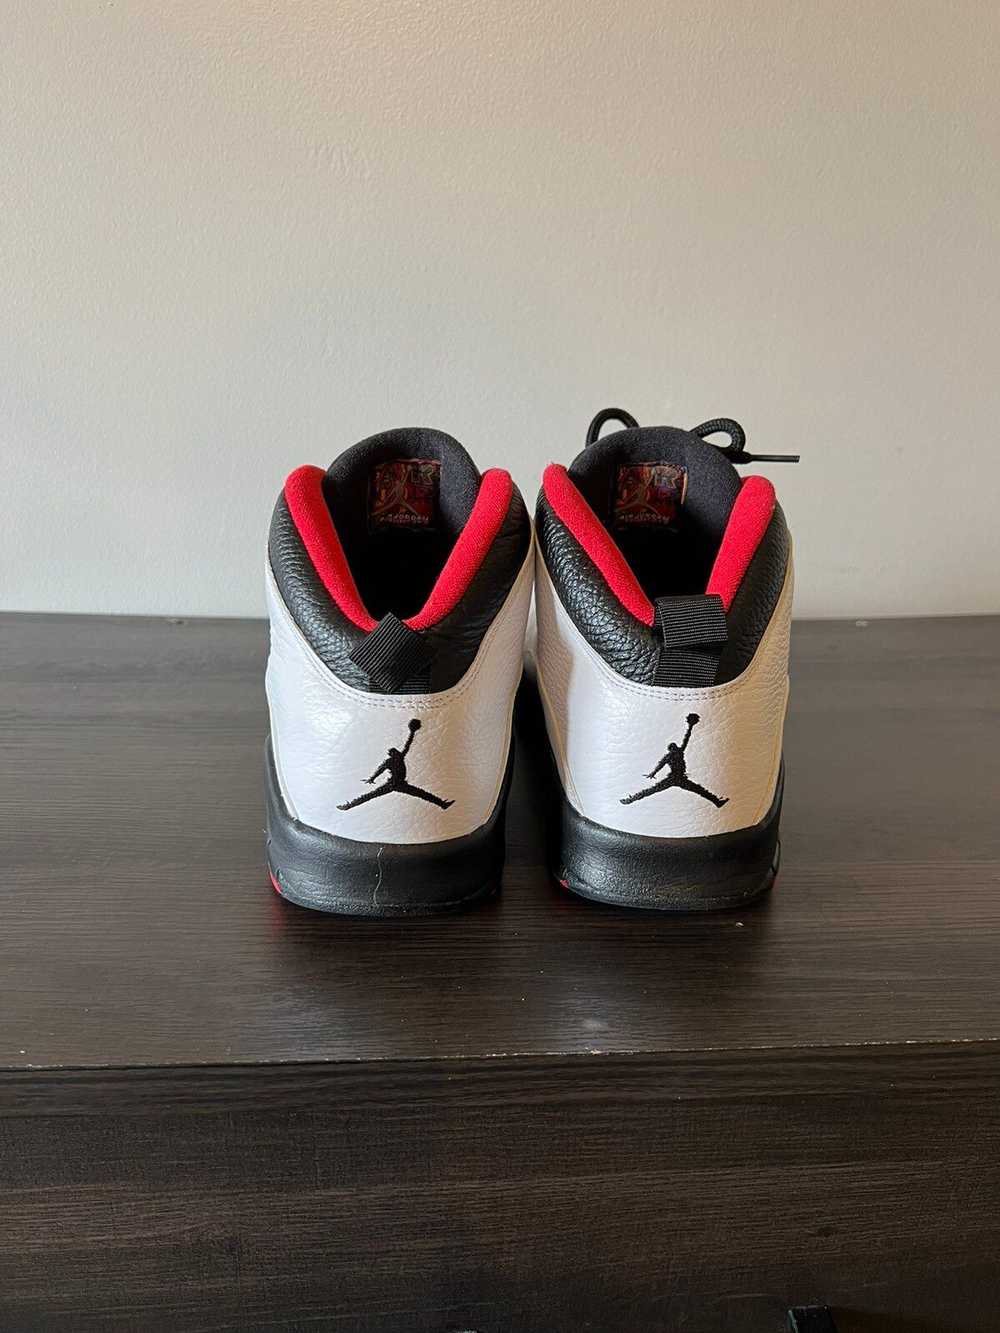 Jordan Brand × Nike Air Jordan 10 “Double Nickel” - image 3